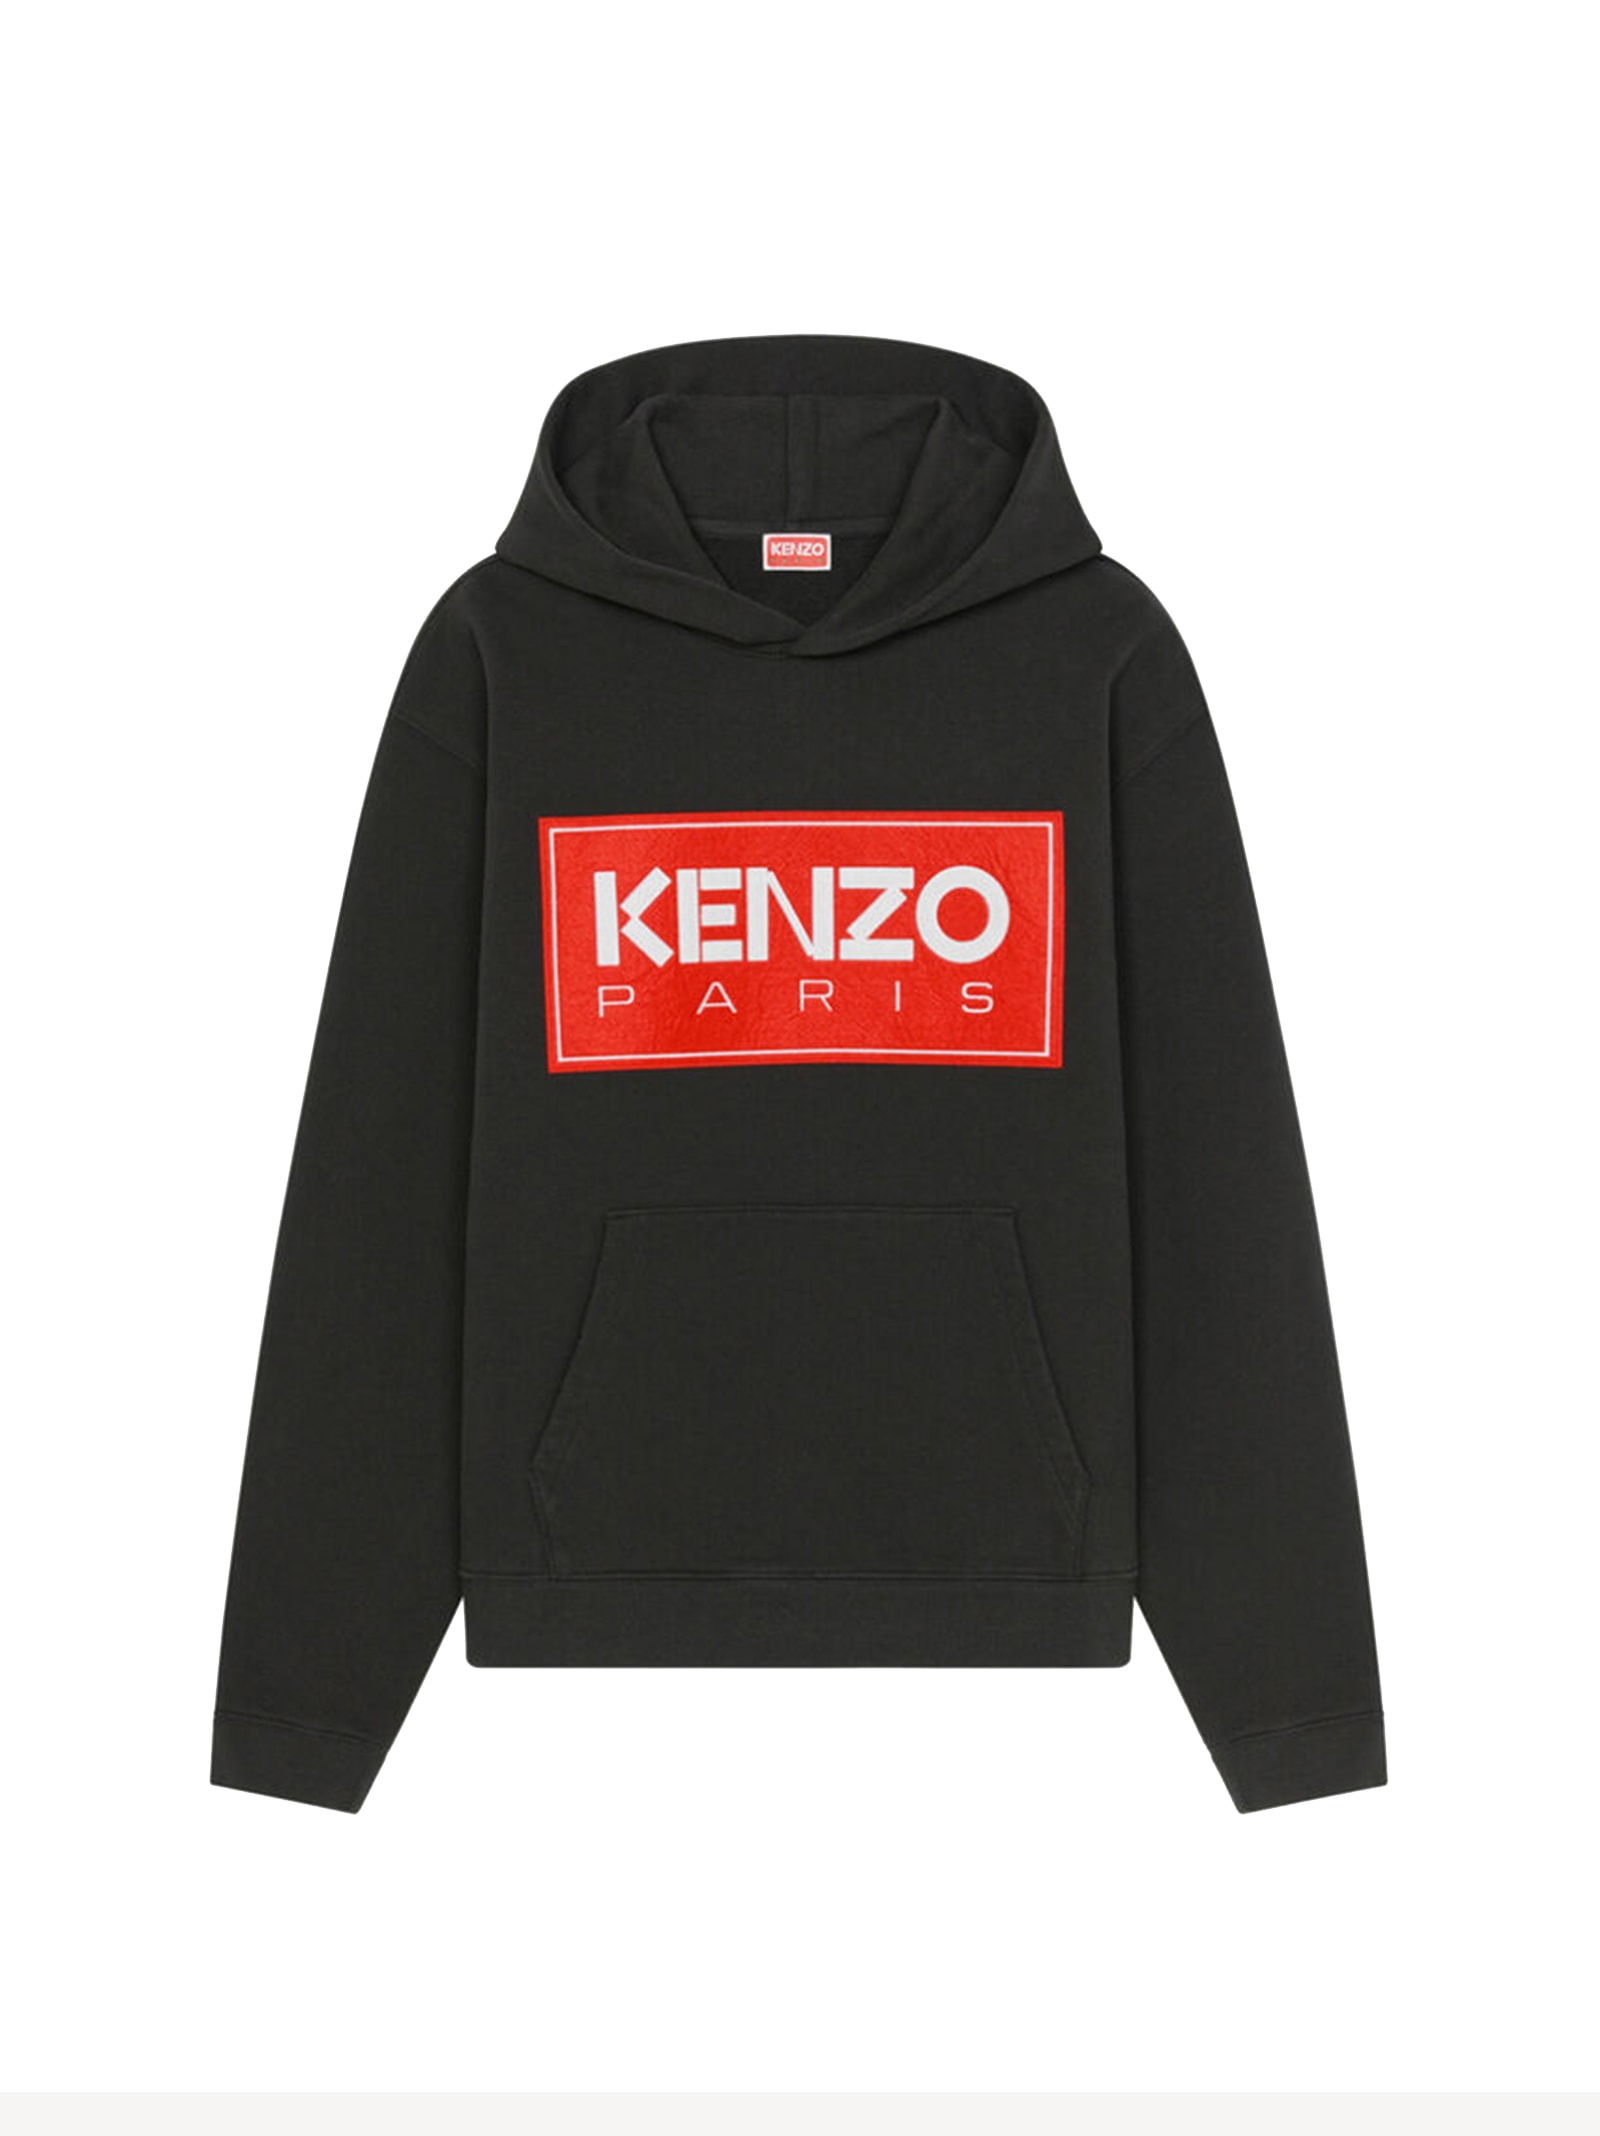 Kenzo Paris Hooded Sweatshirt